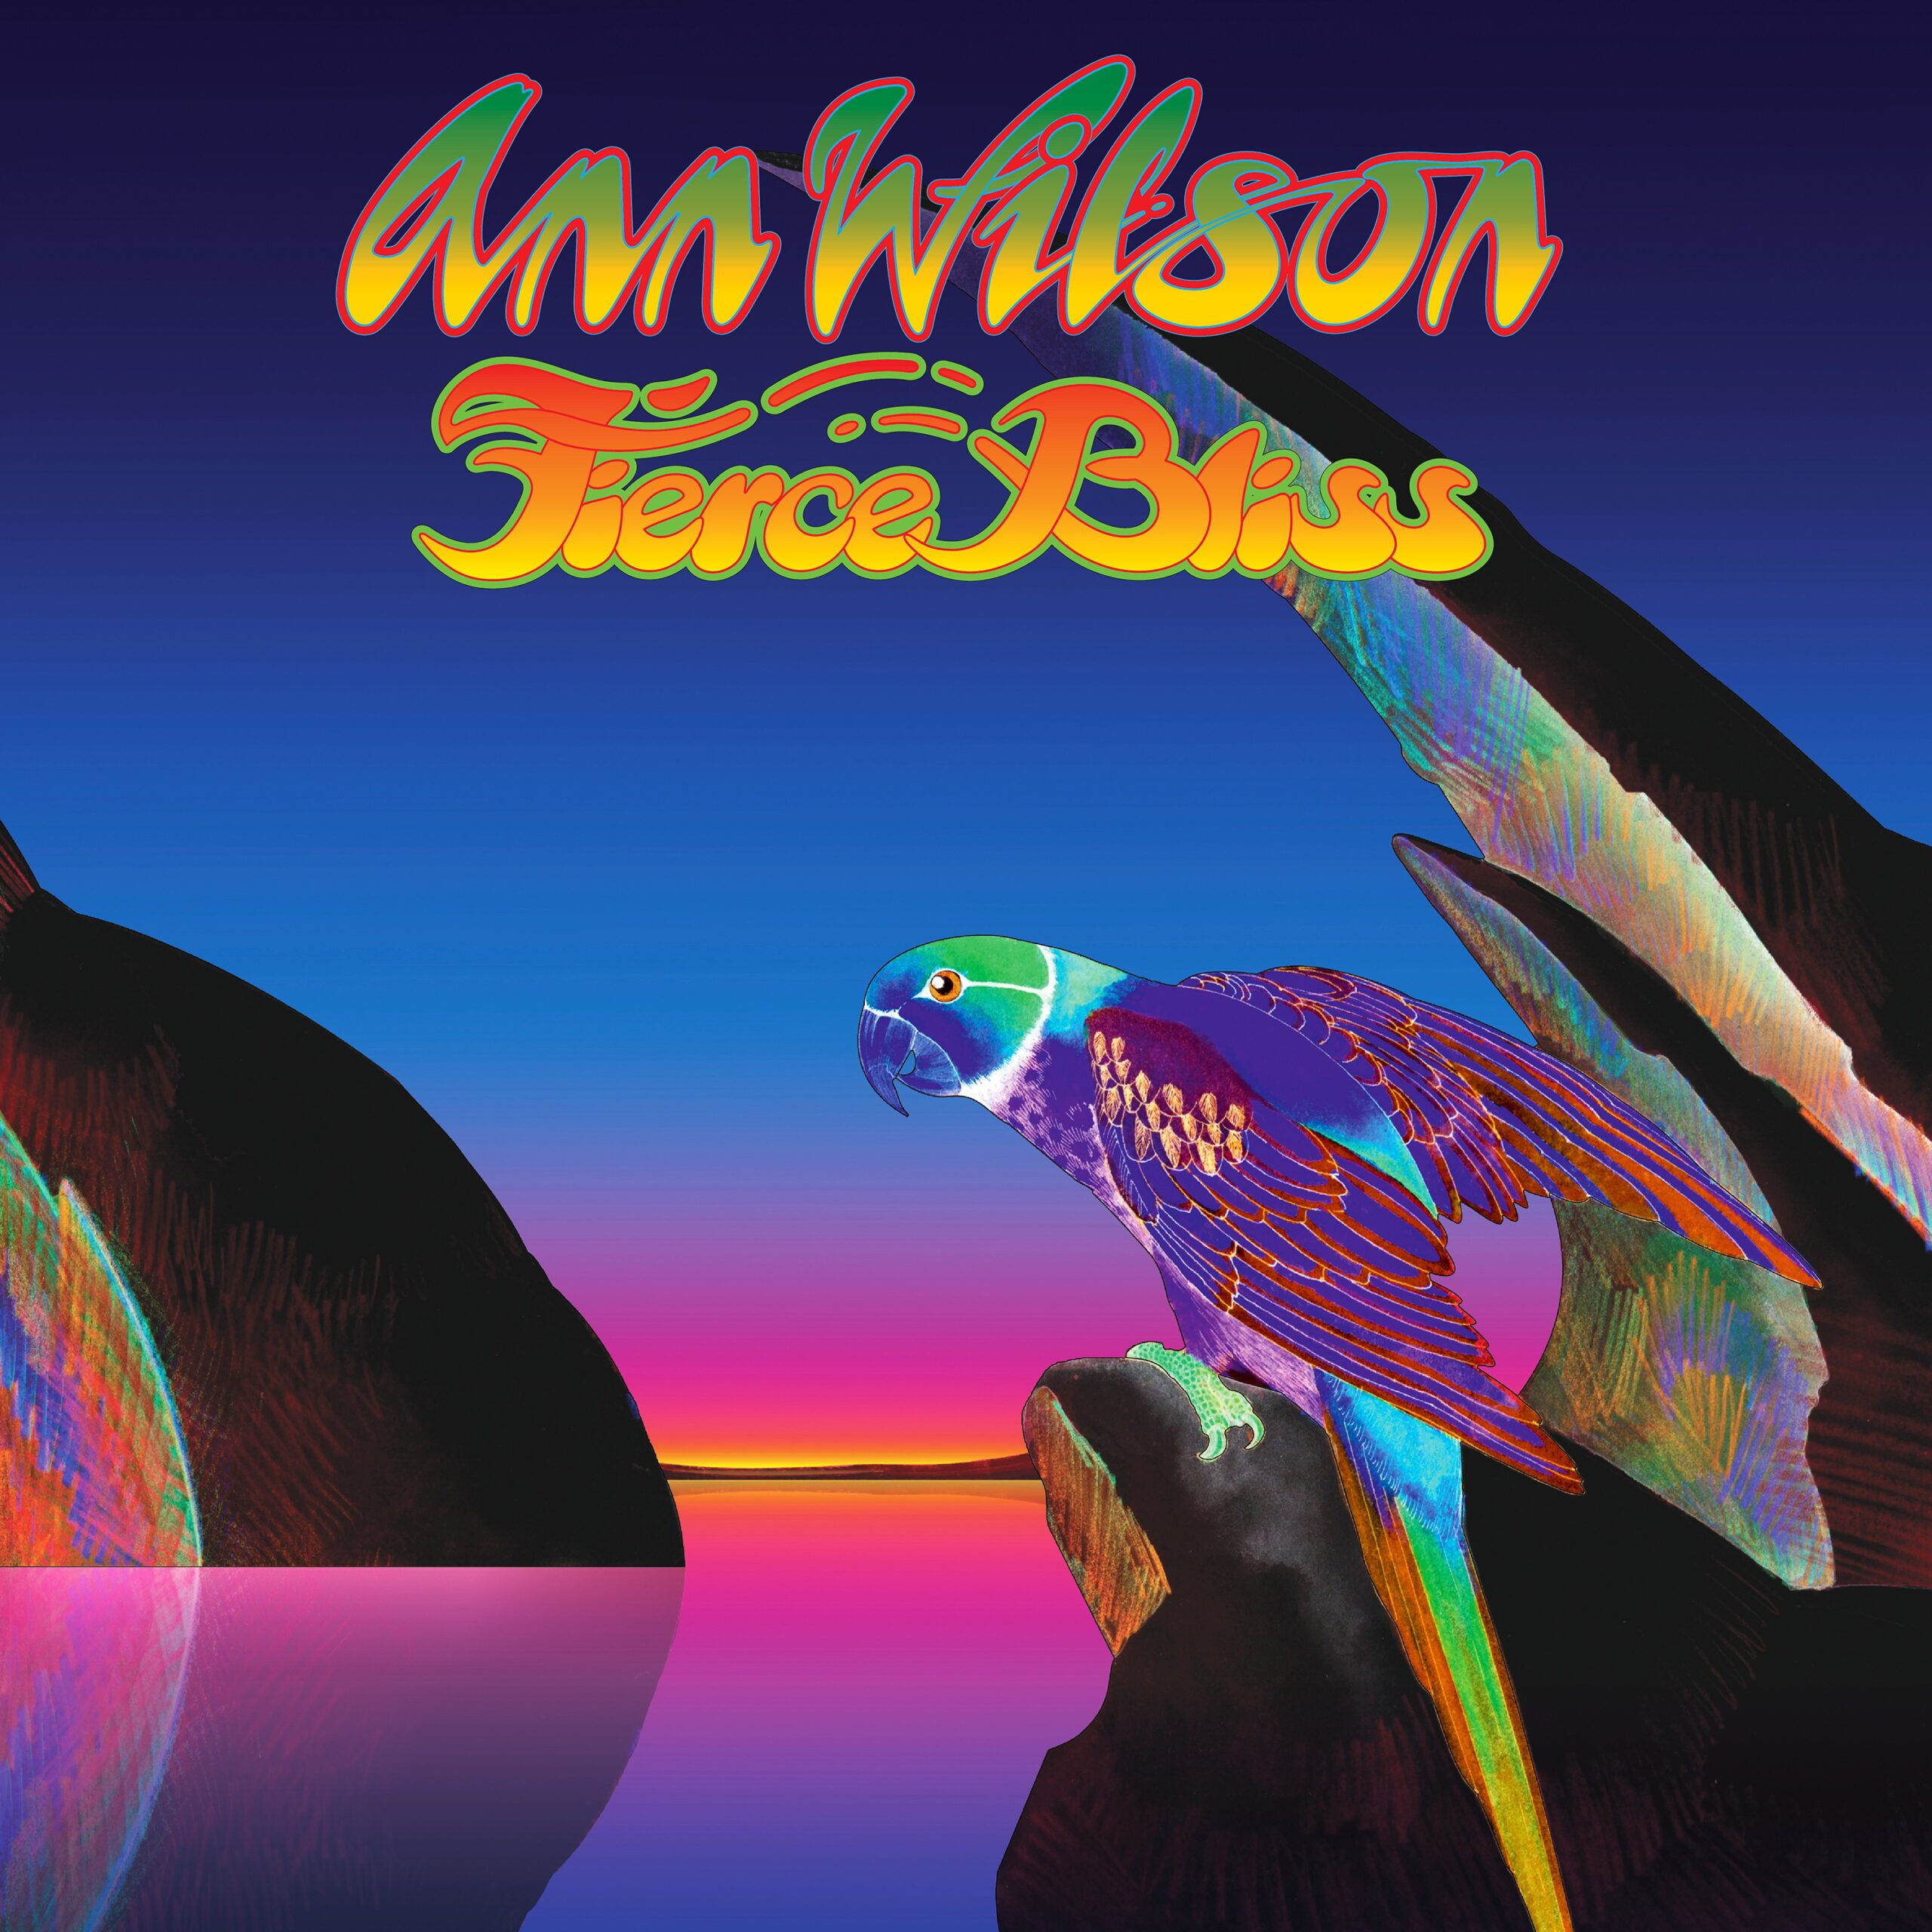 Ann Wilson kündigt "Fierce Bliss"-Solo-Album für April an